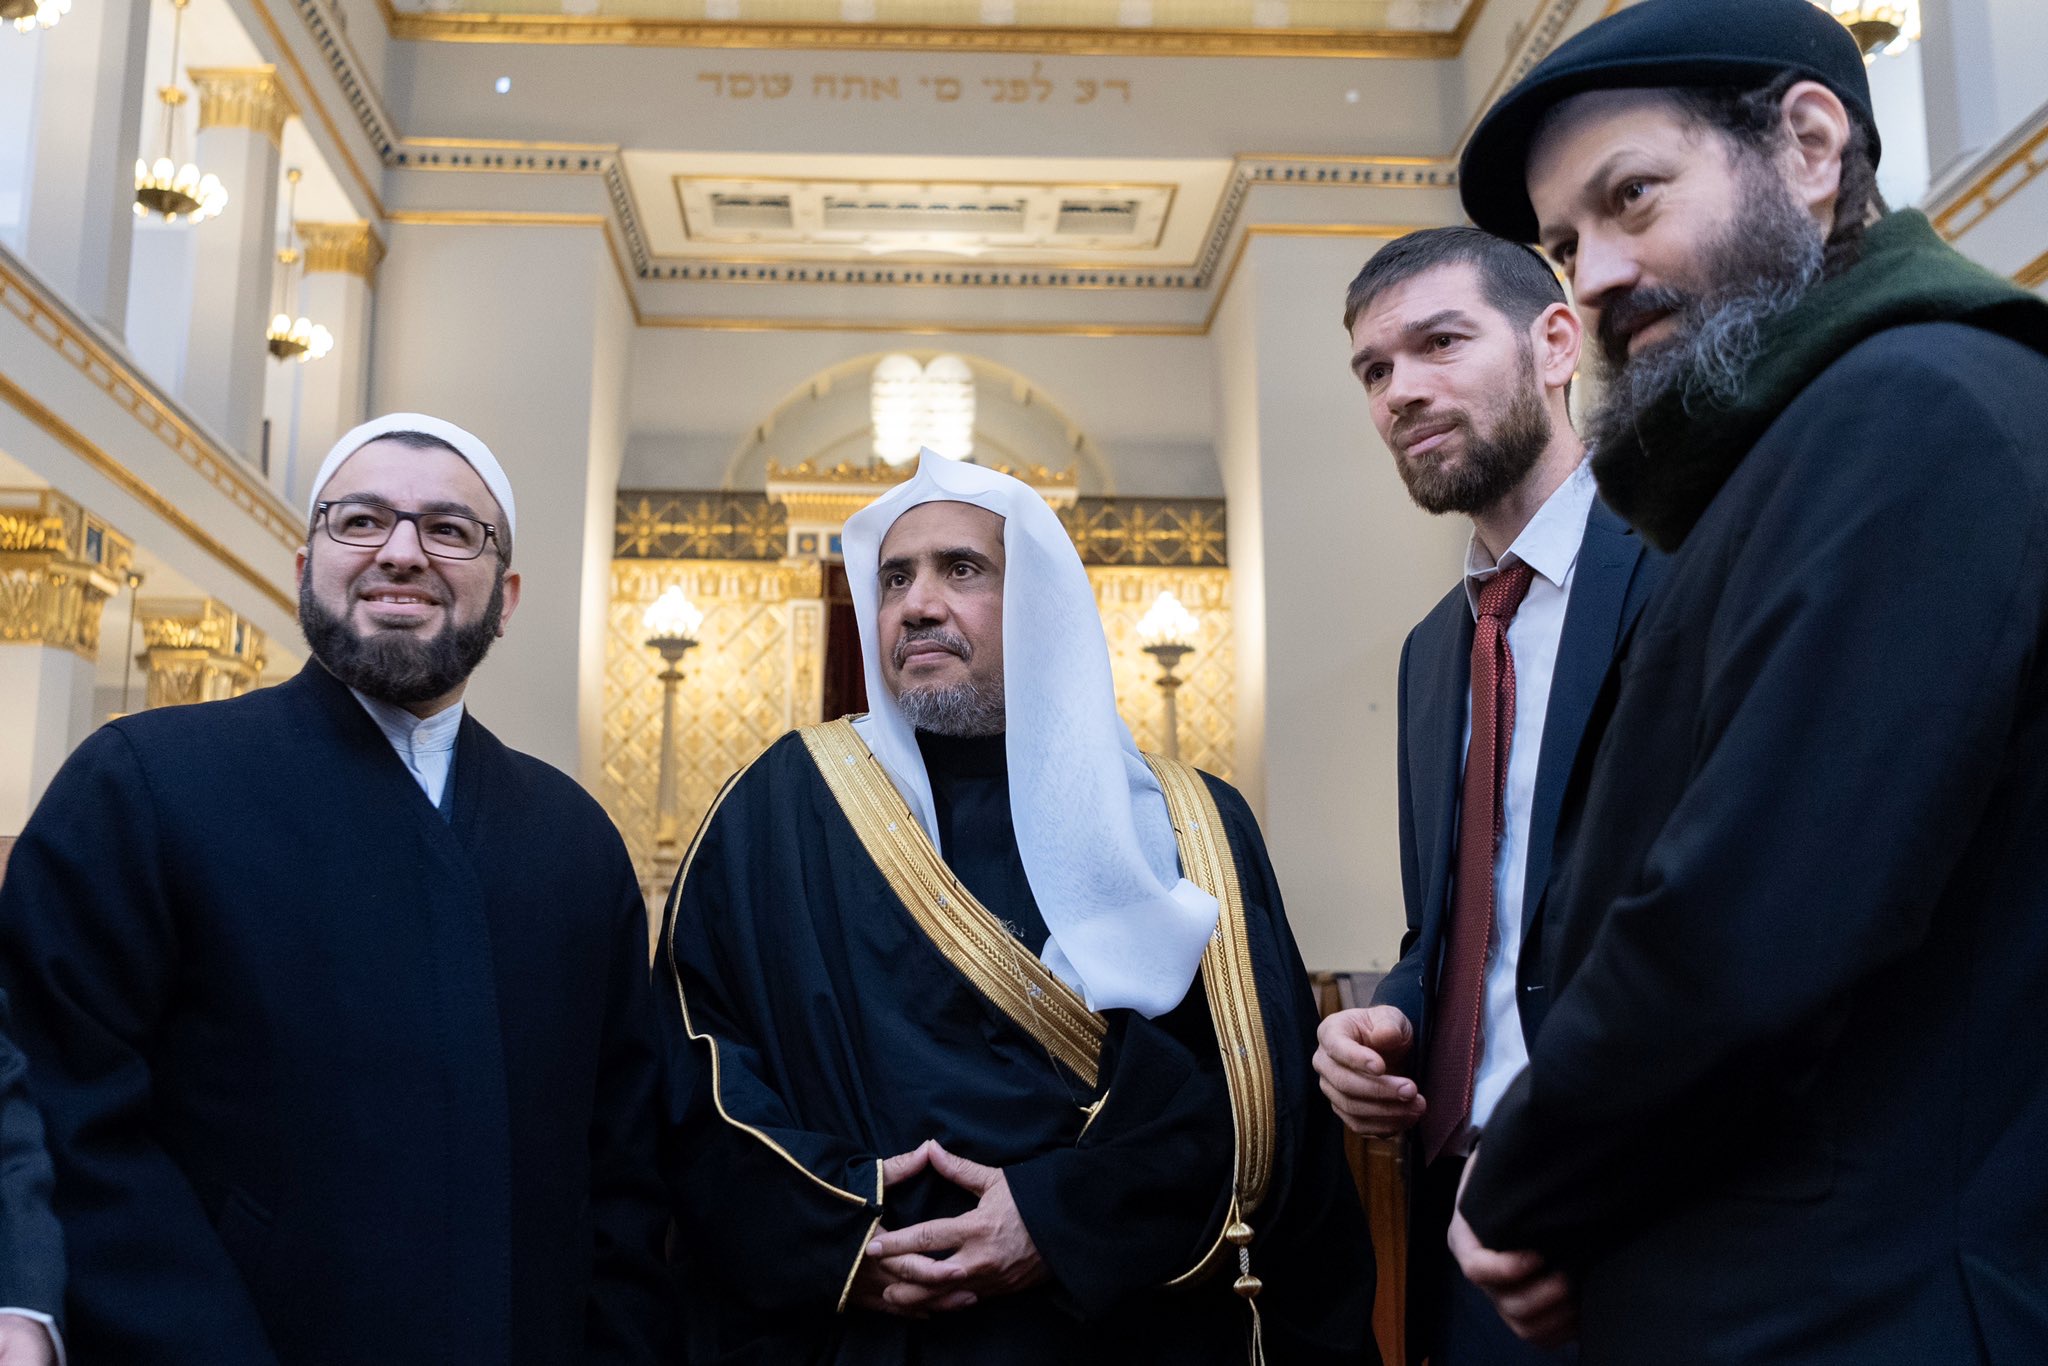 Le D.Mohammad Alissa et le grand rabbin du Danemark confirment durant leur rencontre à Copenhague l’importance de l’entraide entre les adeptes des religions pour lutter contre les discours de haine et racisme.